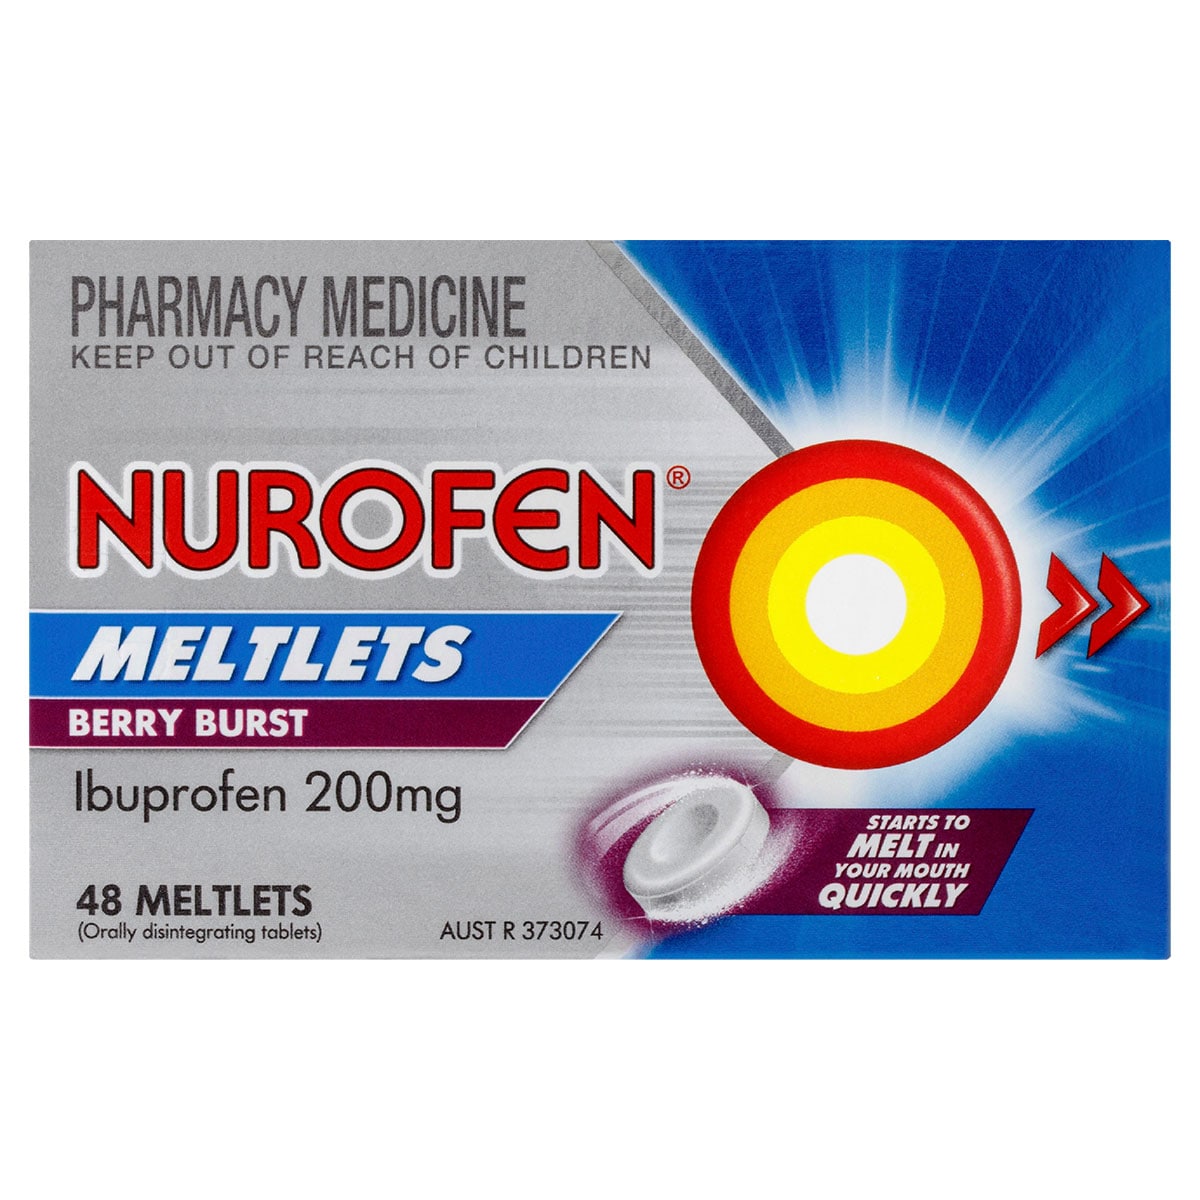 Nurofen Meltlets Pain Relief Berry Burst 48 Tablets